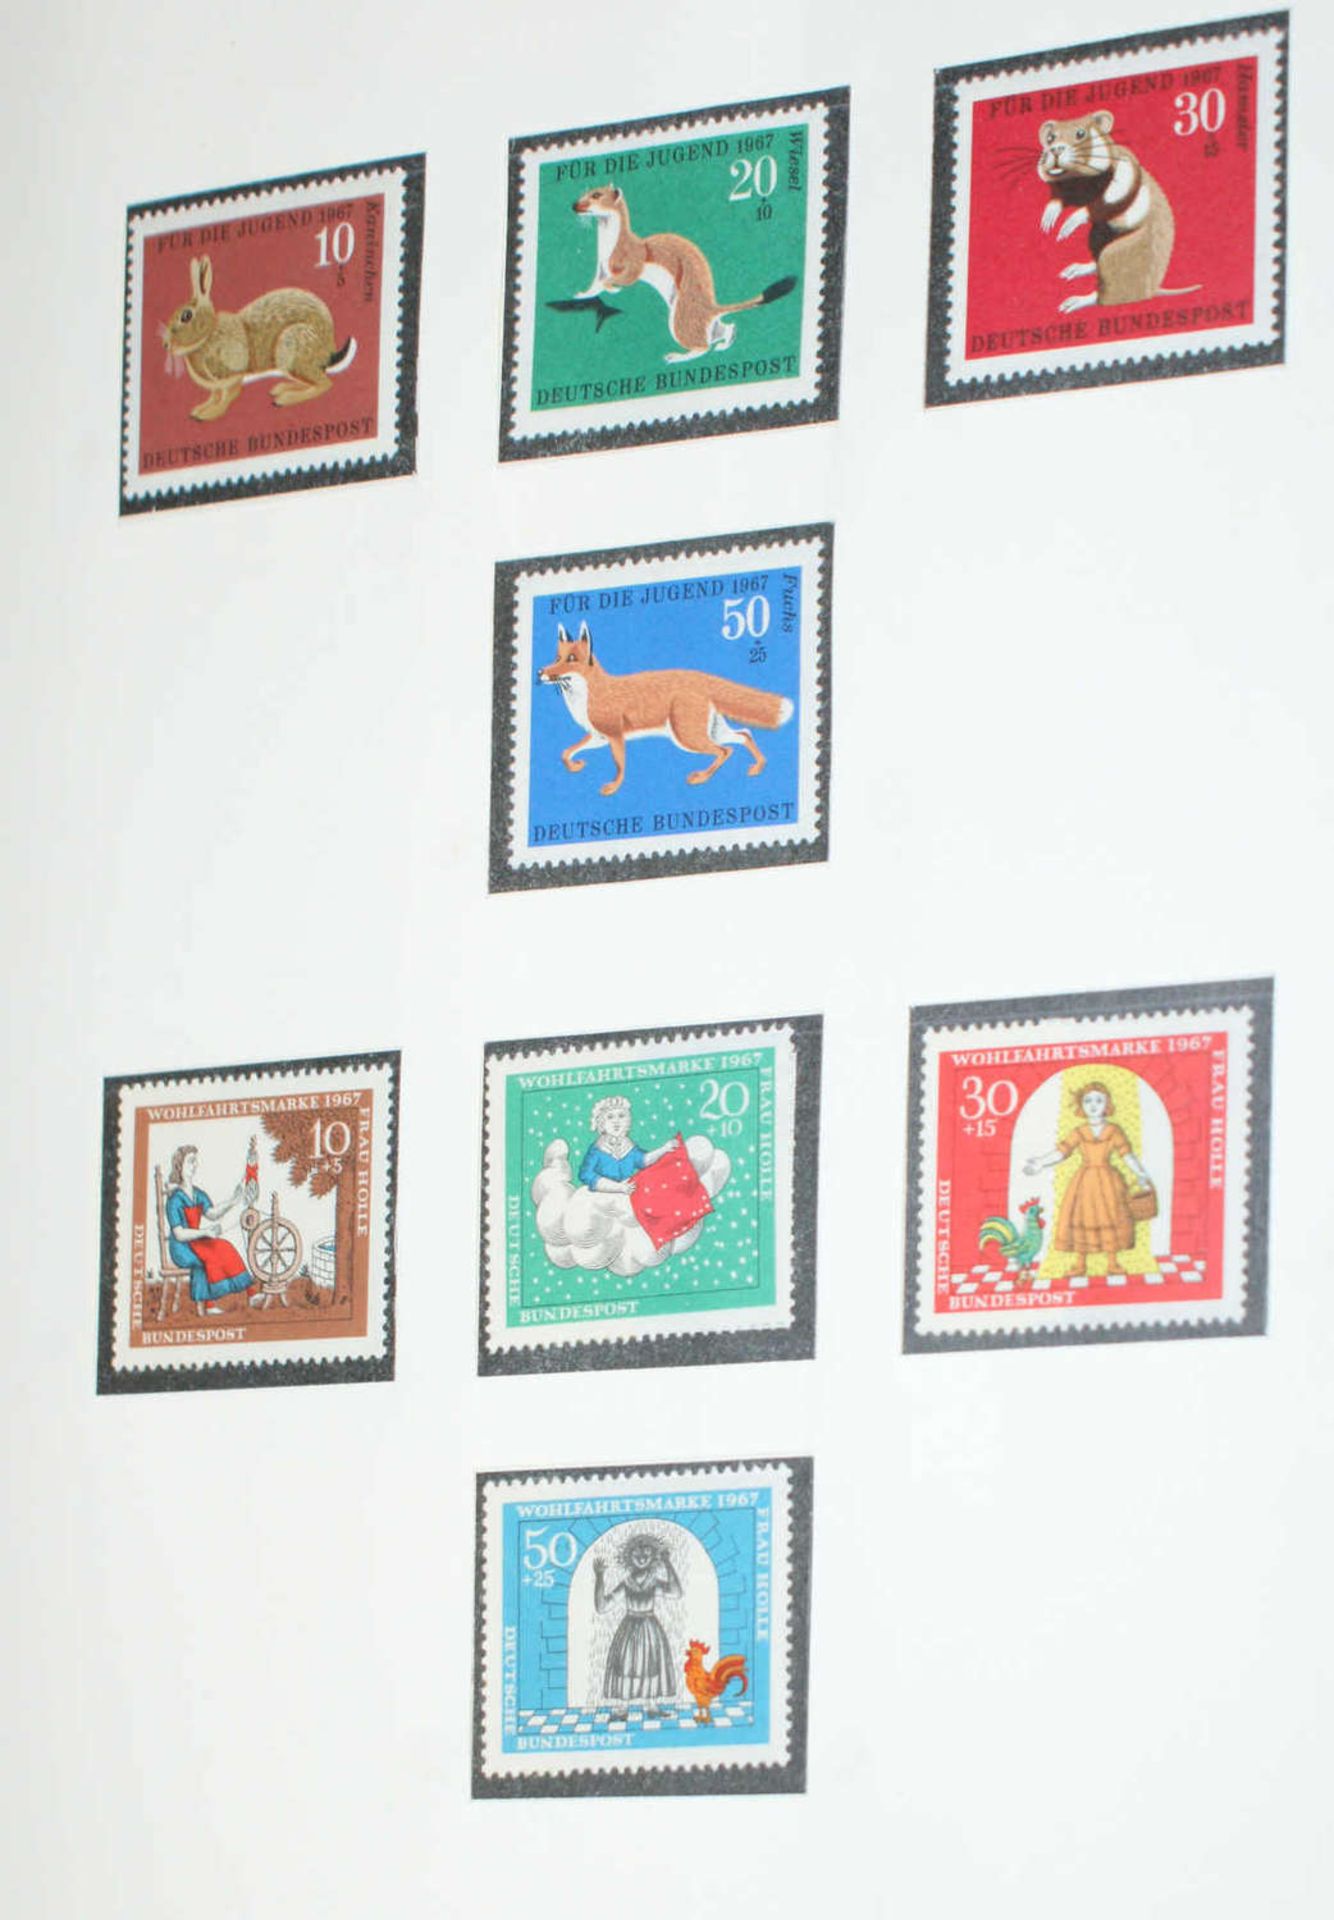 BRD - Briefmarken Dubletten Konvolut, bestehend aus 18 Alben, teilweise schlecht gelagert. - Bild 5 aus 5